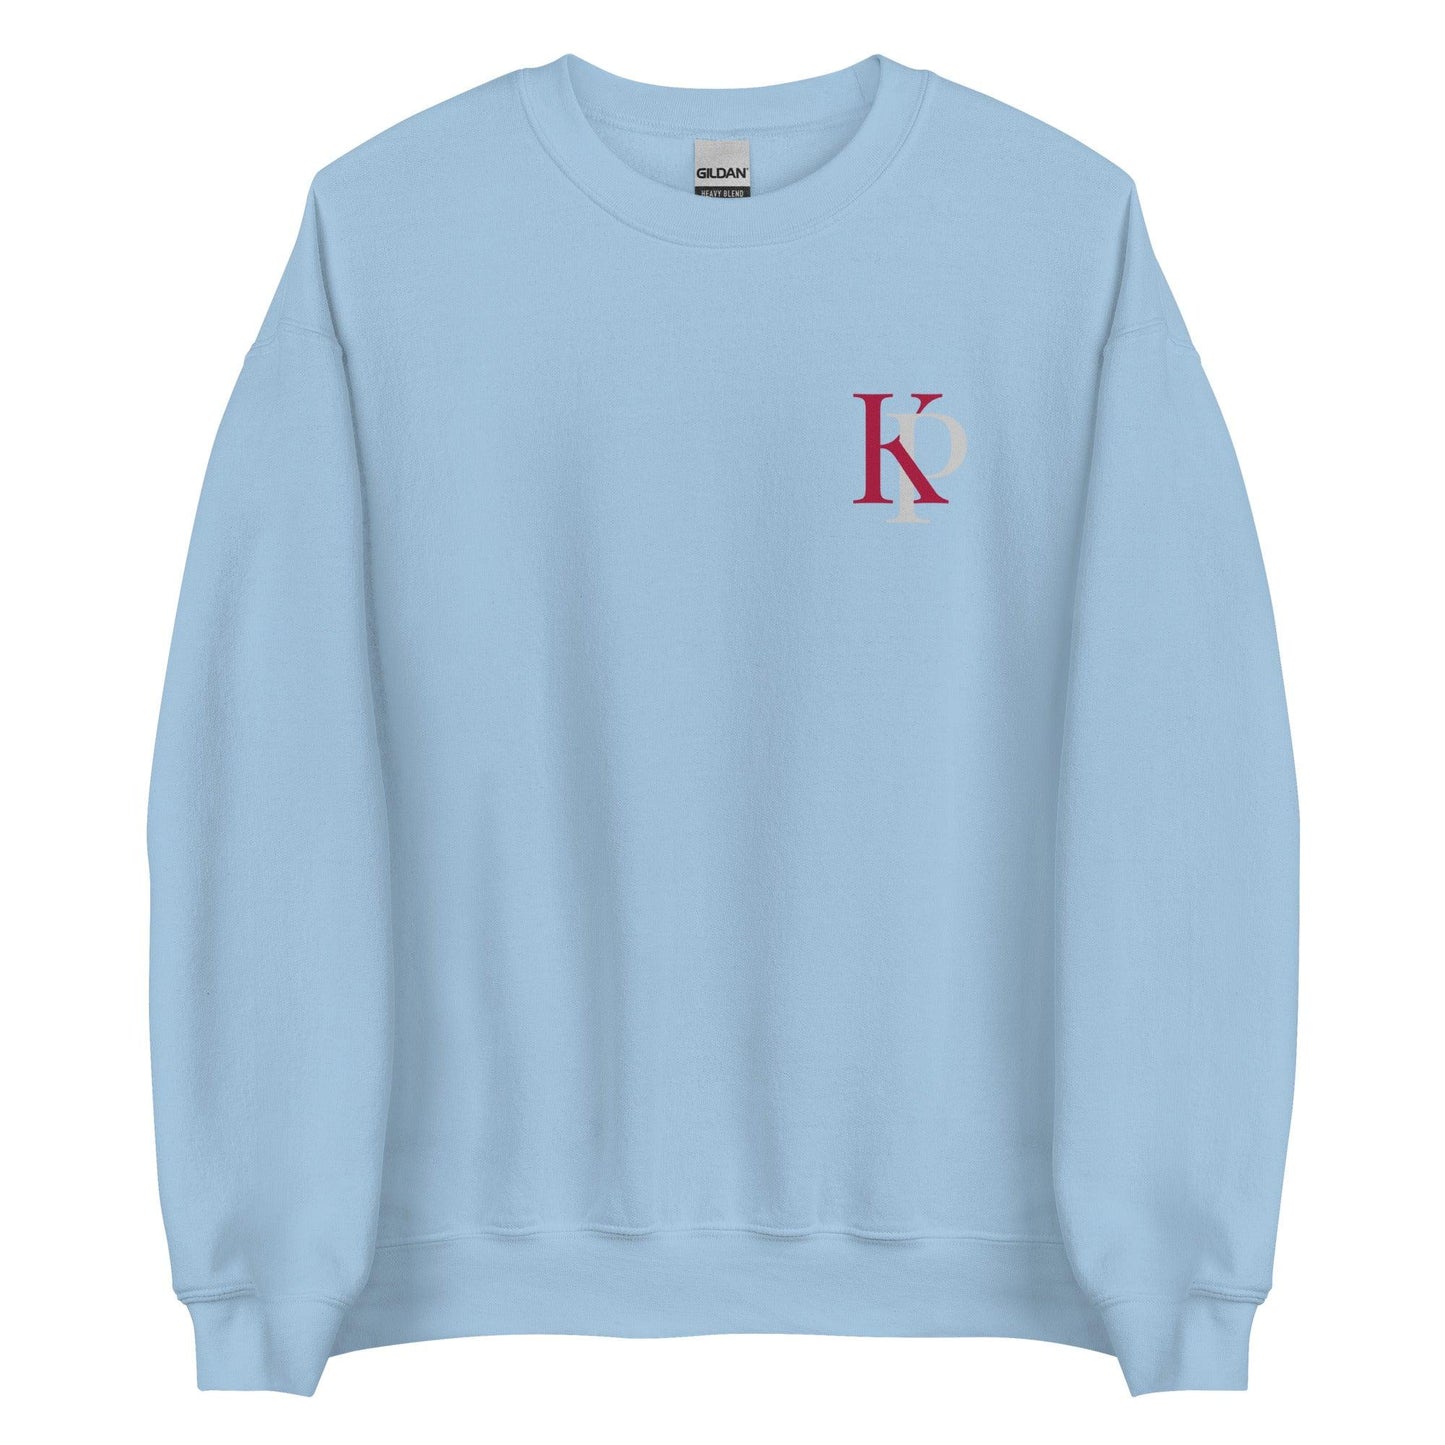 Kinley Pate "Essential" Sweatshirt - Fan Arch